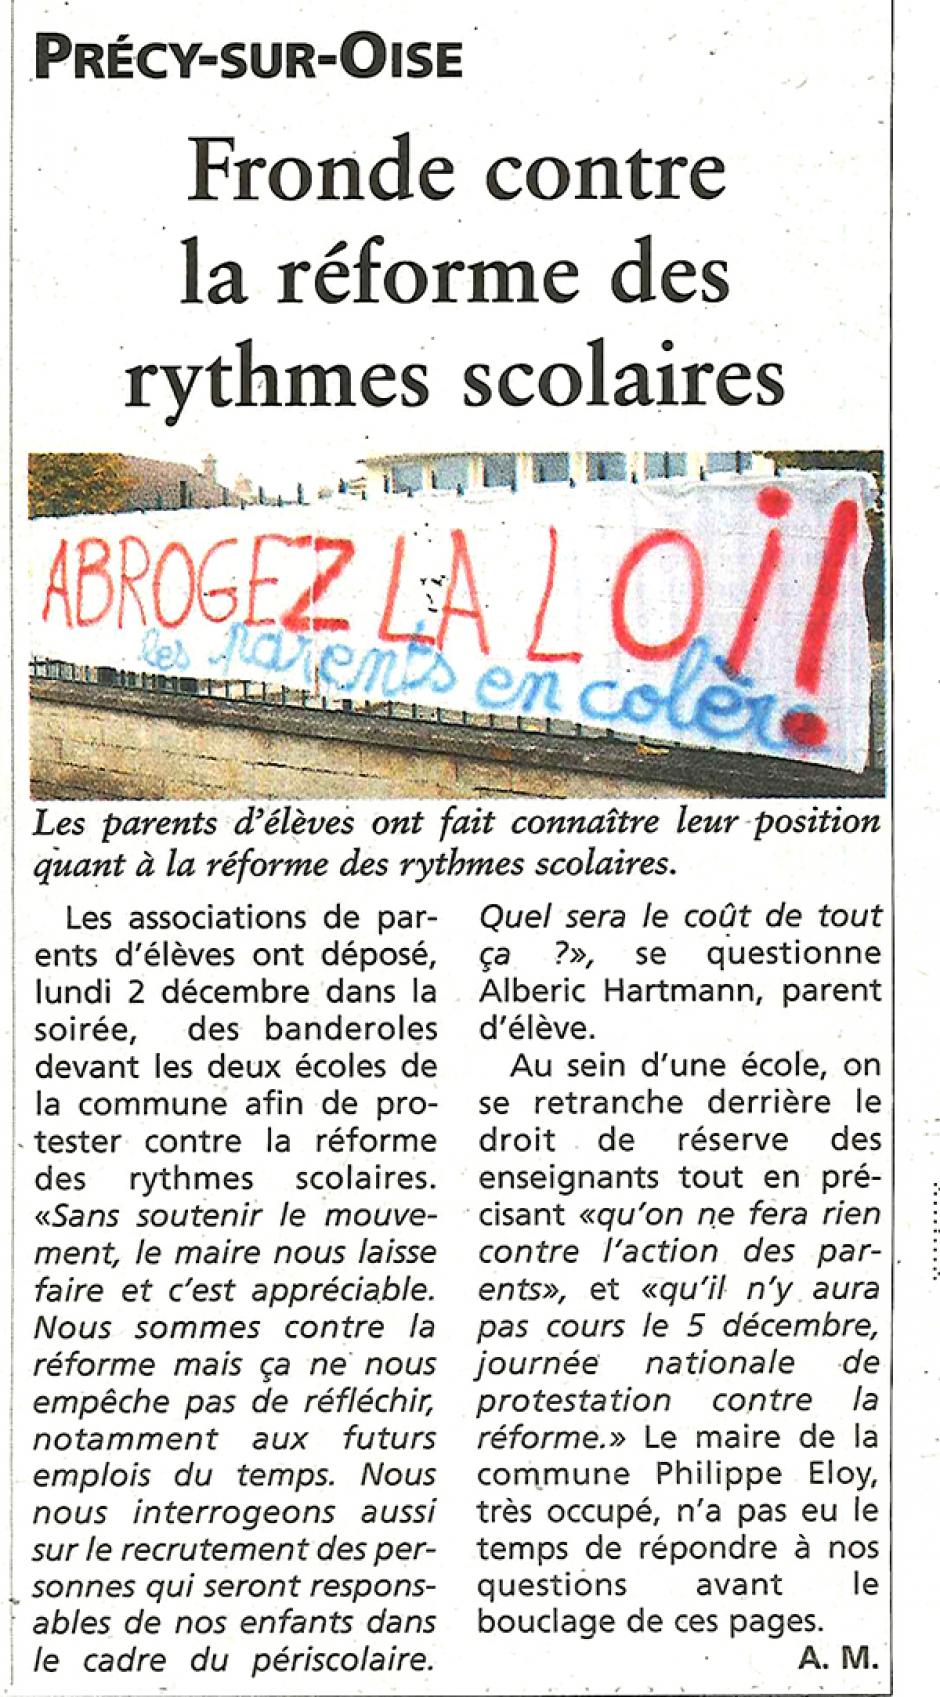 20131204-OH-Précy-sur-Oise-Fronde sur la réforme des rythmes scolaires